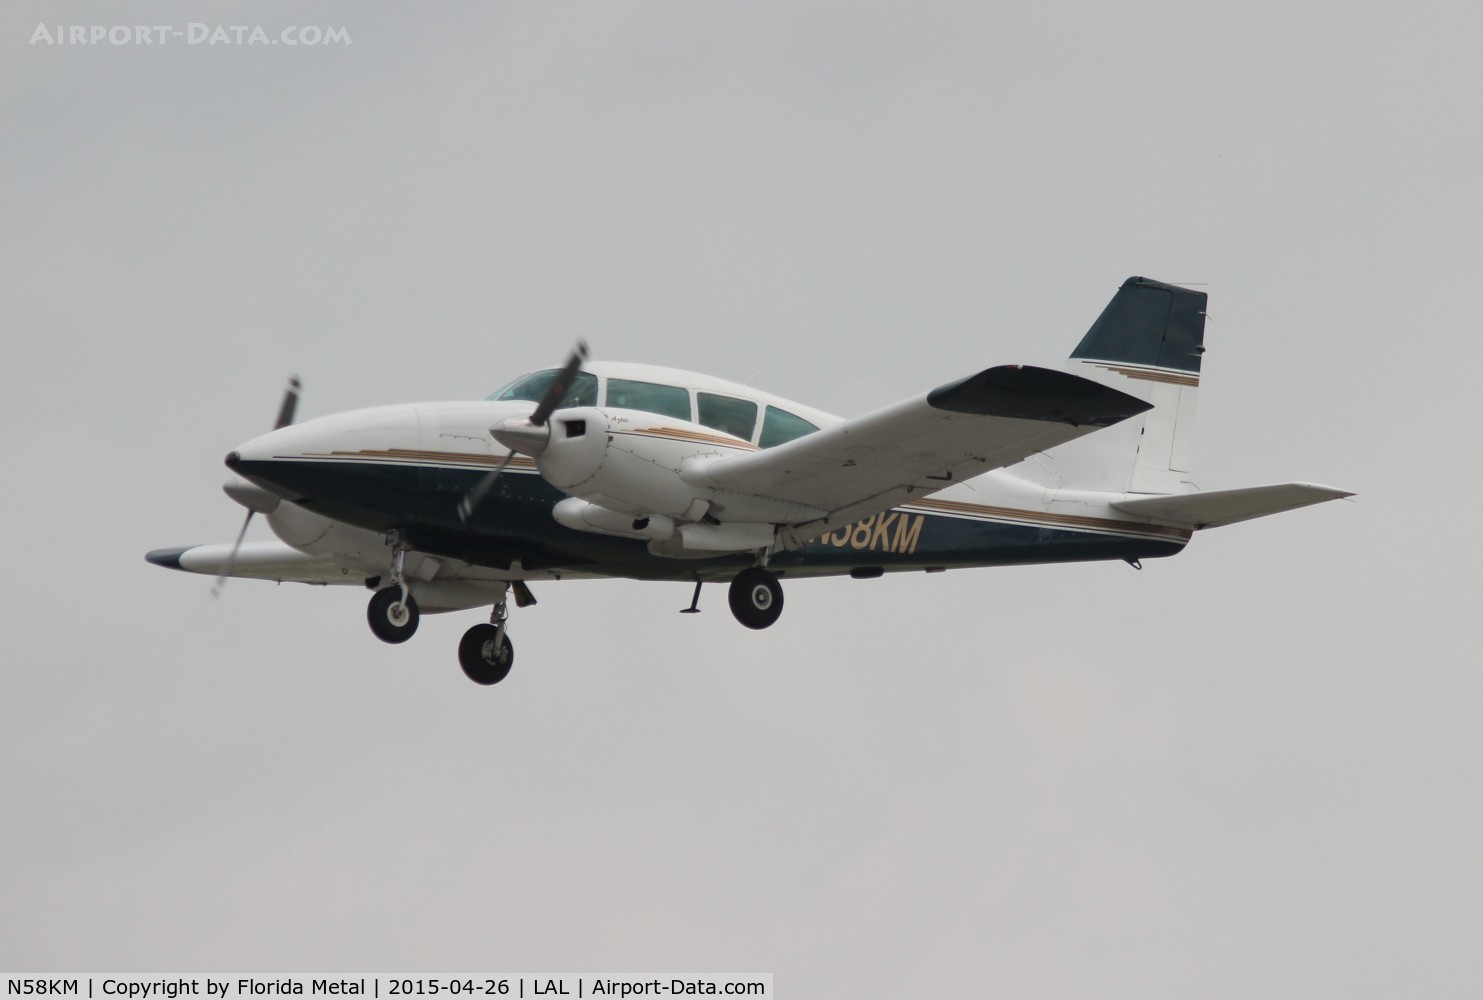 N58KM, 1974 Piper PA-23-250 Aztec C/N 27-7405440, PA-23